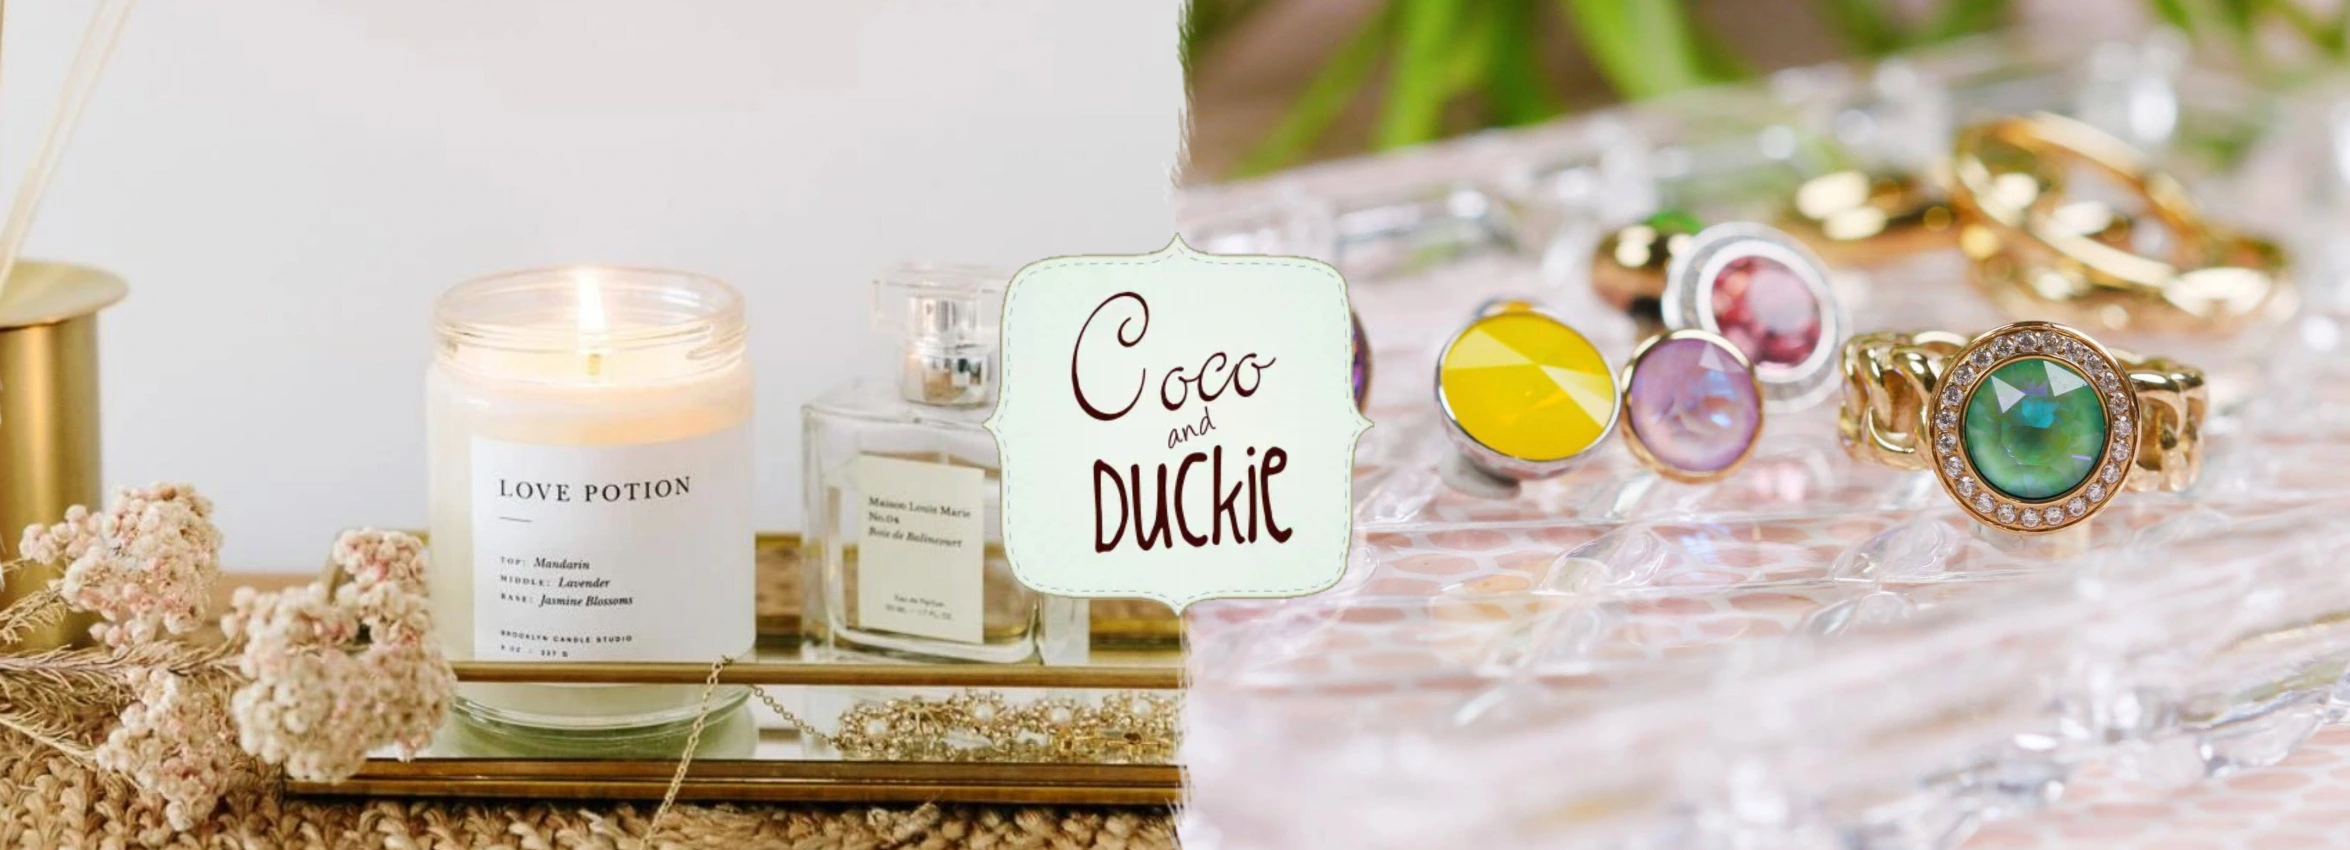 Coco-Duckie_Desktop_ET